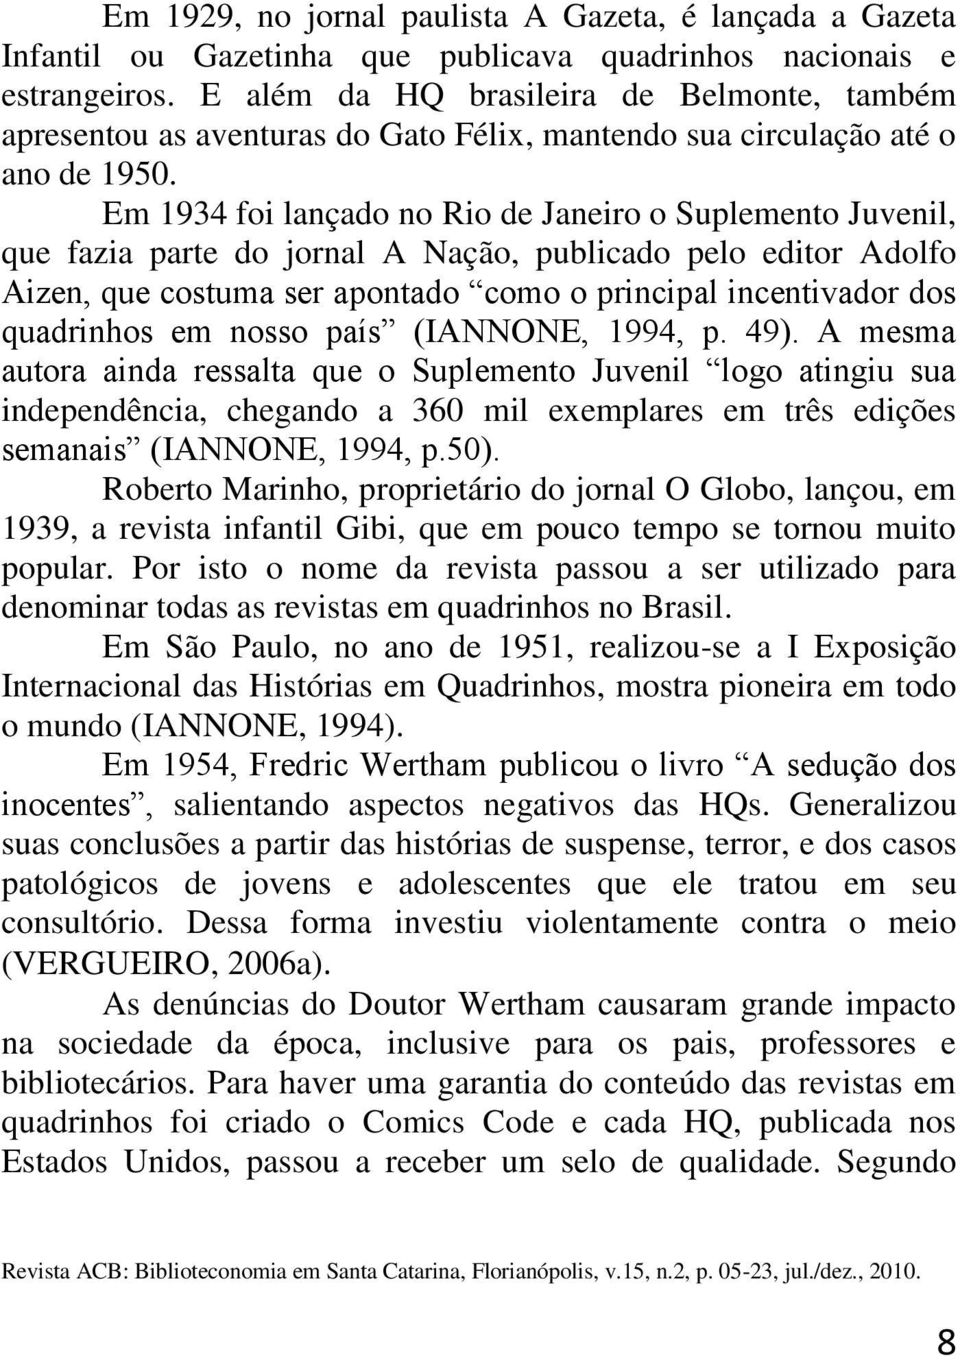 Em 1934 foi lançado no Rio de Janeiro o Suplemento Juvenil, que fazia parte do jornal A Nação, publicado pelo editor Adolfo Aizen, que costuma ser apontado como o principal incentivador dos